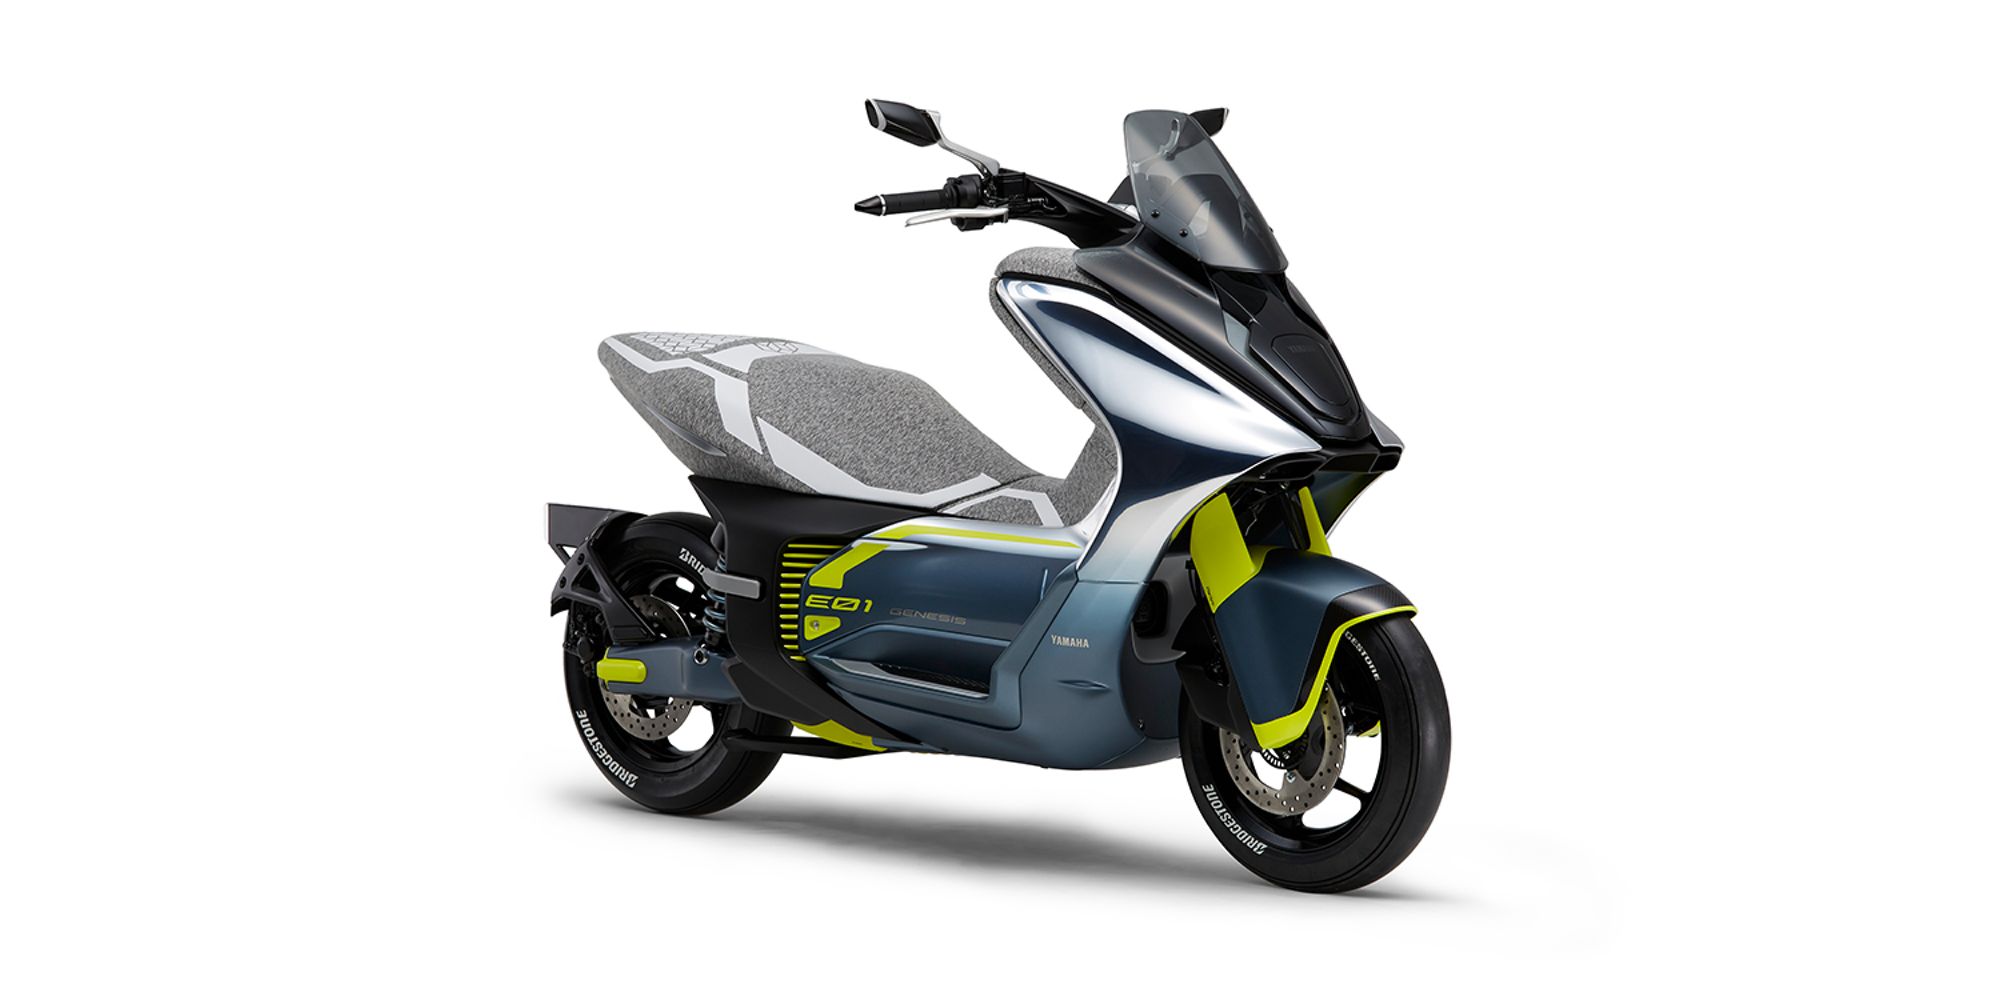 Yamaha va mettre en production son E01, un nouveau scooter électrique de classe 125 cm3